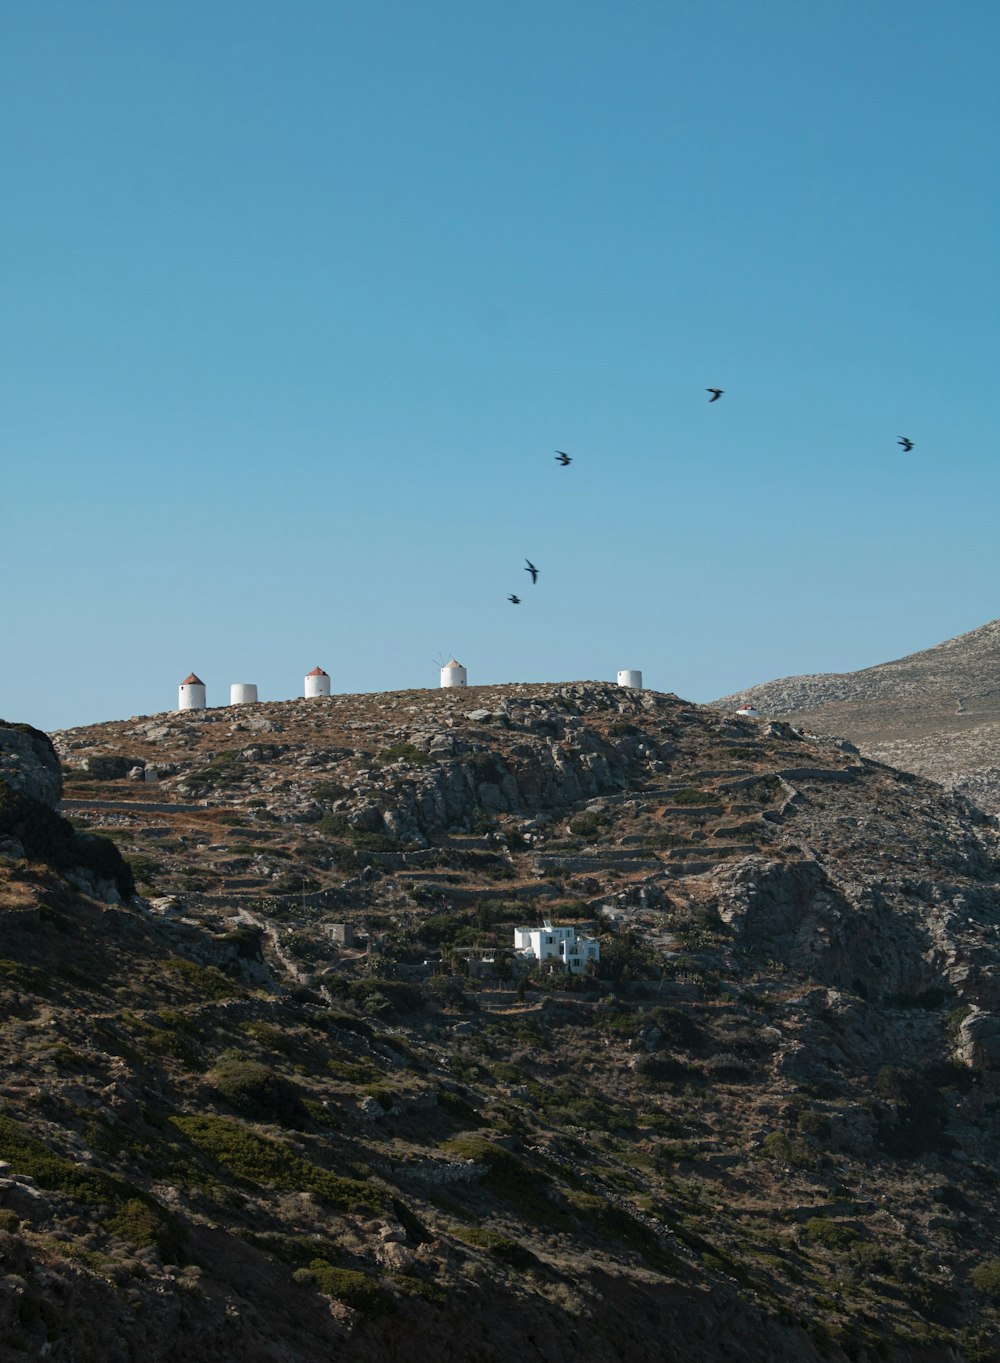 Un groupe de bâtiments blancs sur une colline rocheuse